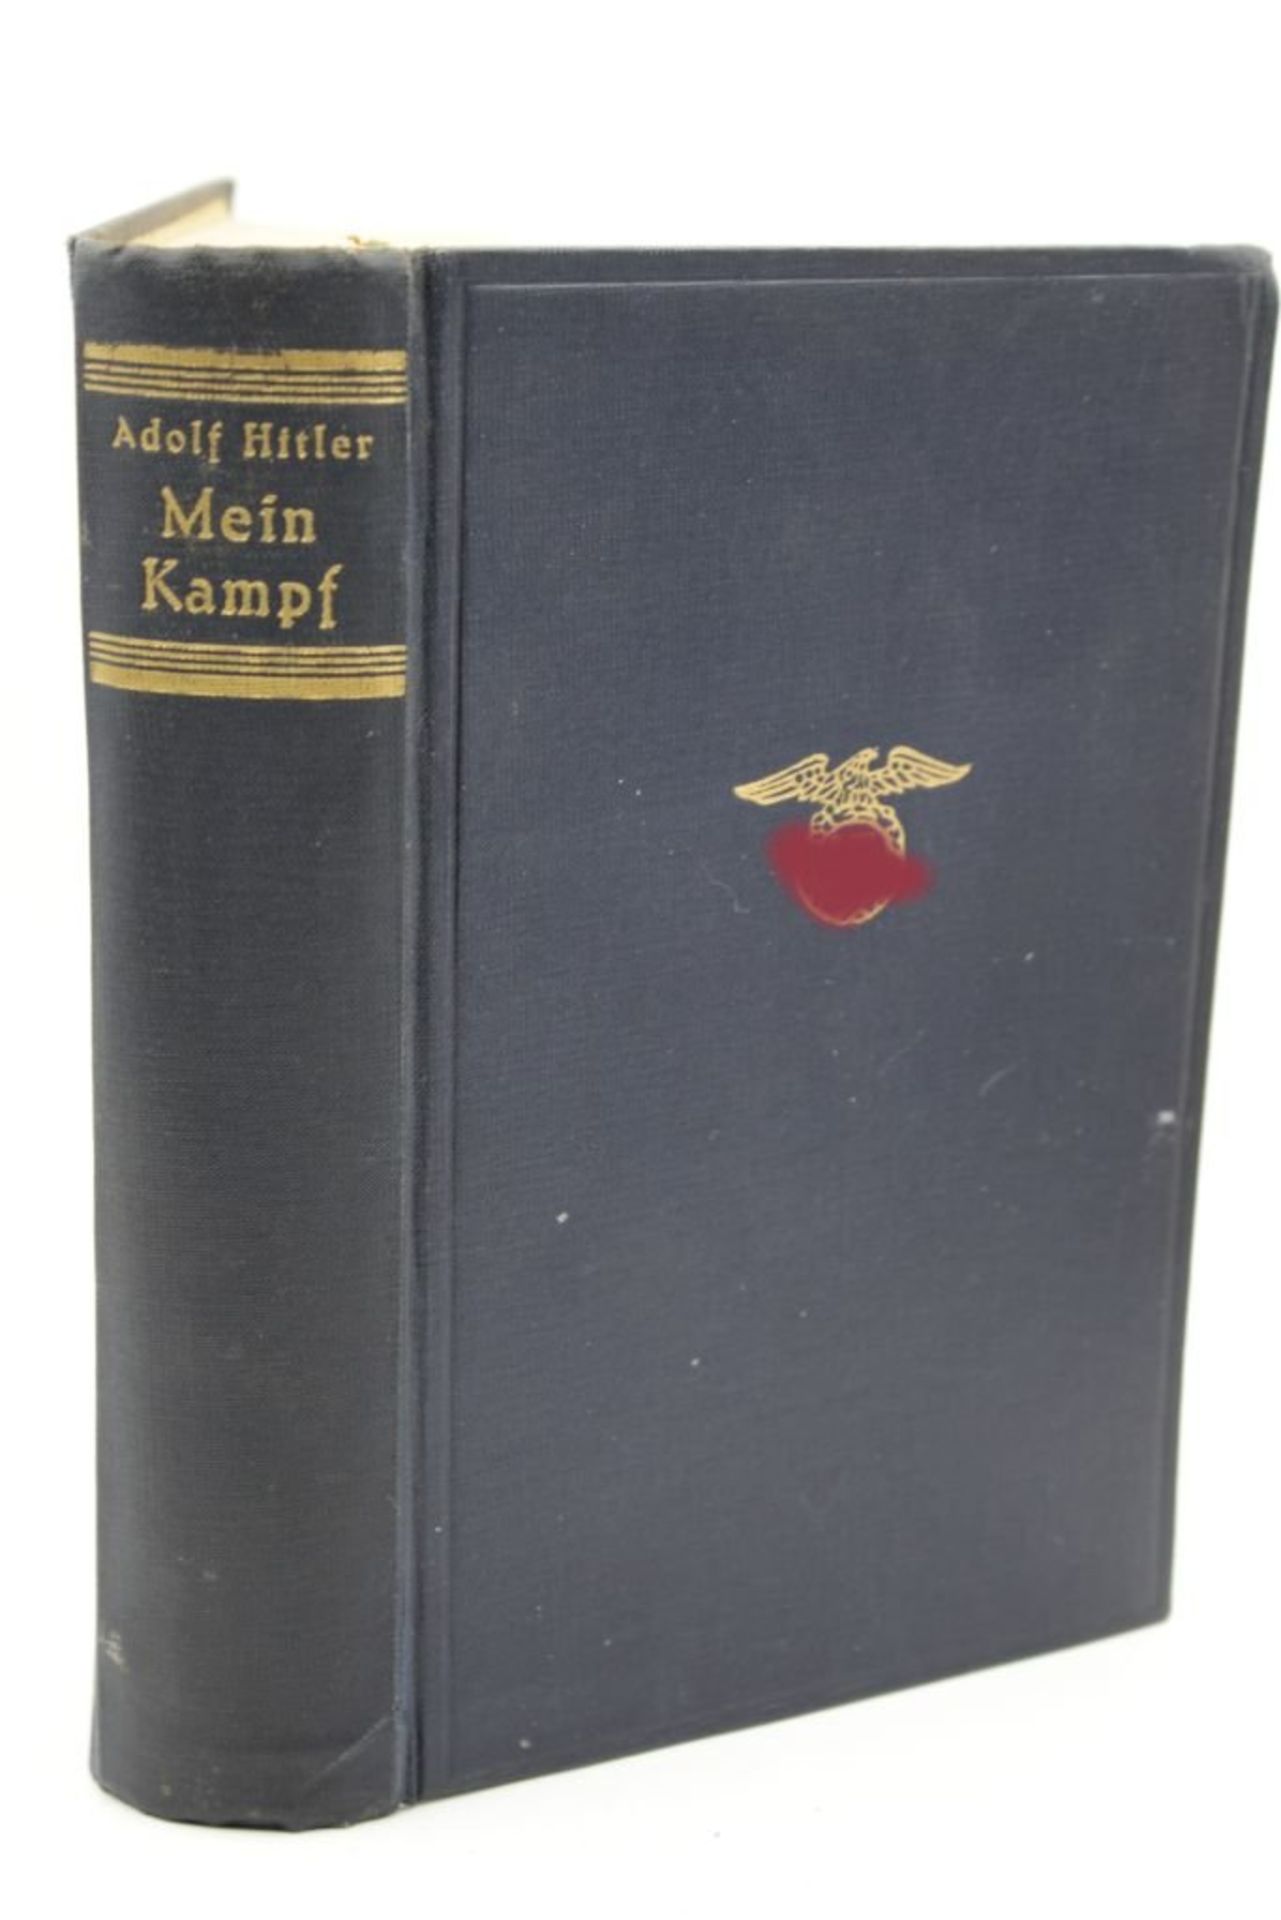 Adolf Hitler "Mein Kampf", blaue Ausgabe 1941, Altersspuren - Bild 2 aus 2